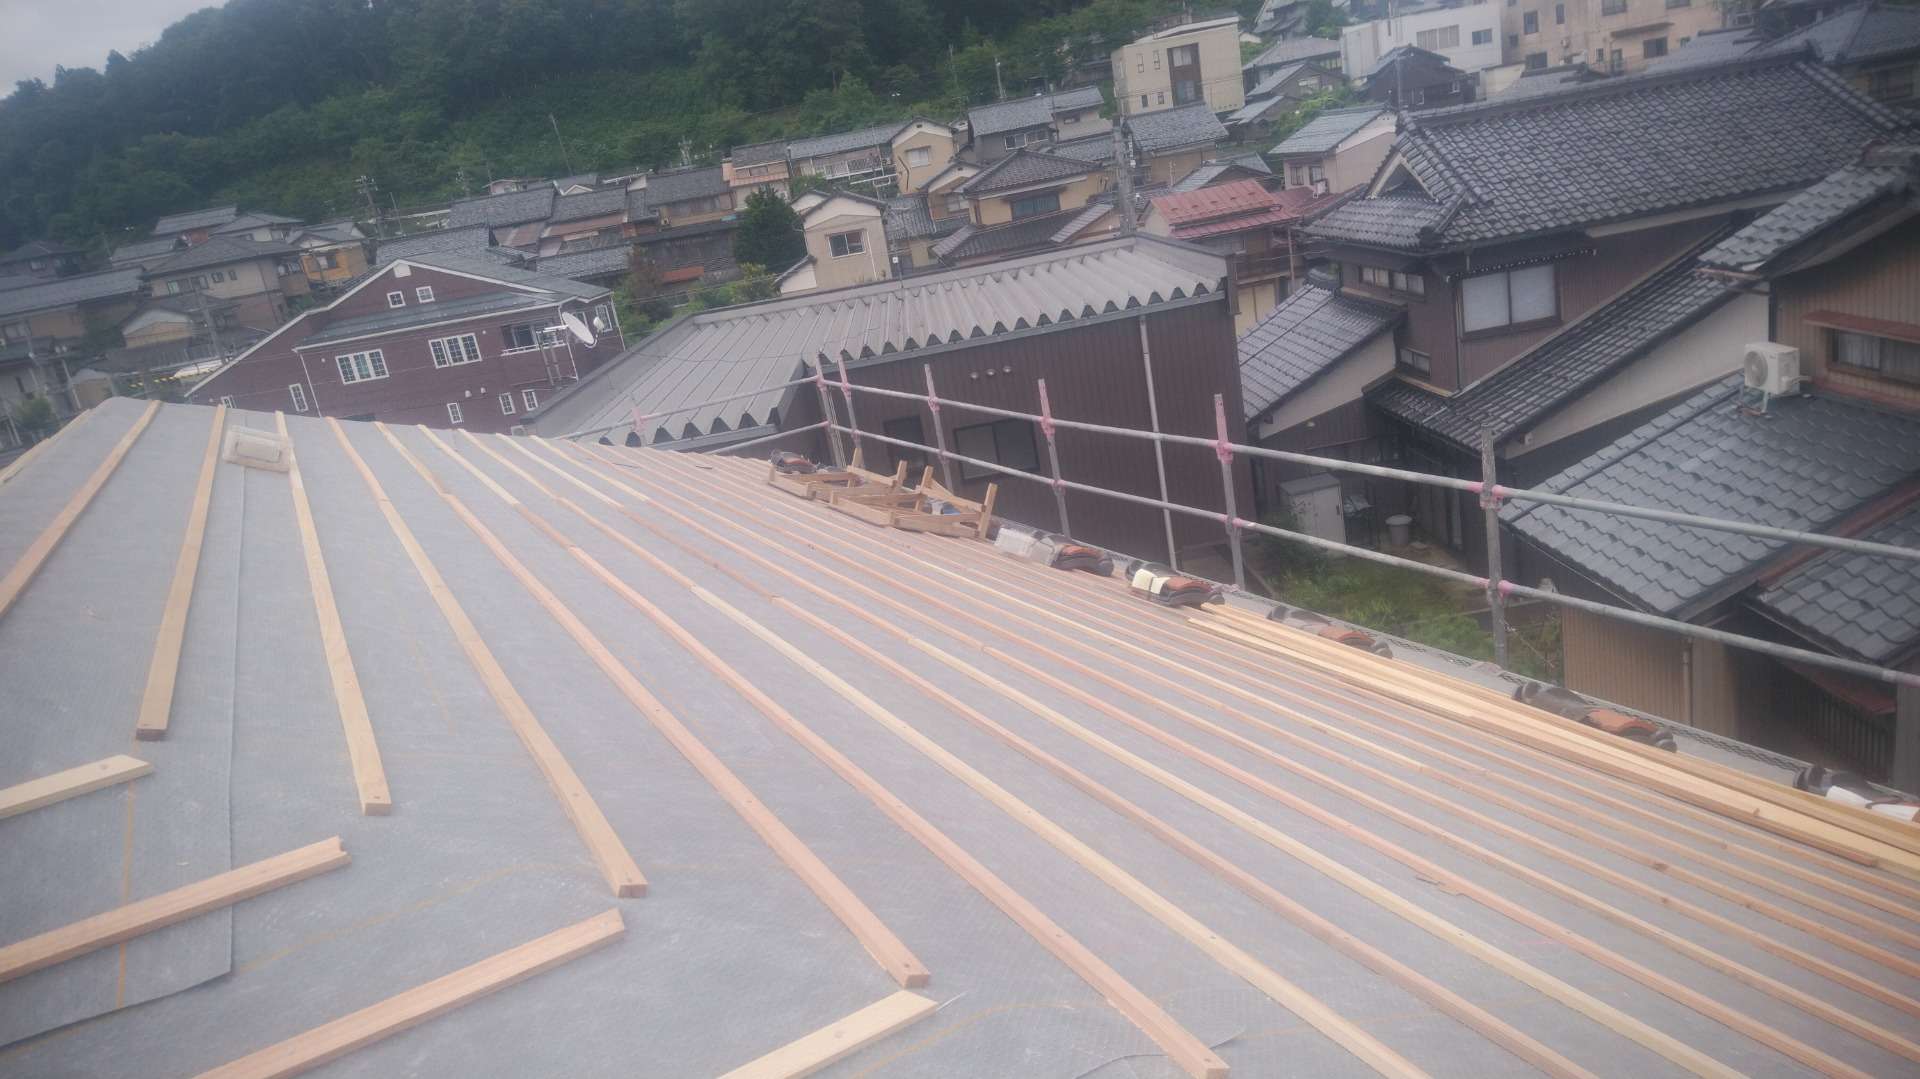 鯖江市で瓦屋根の葺き替え工事に来ています。